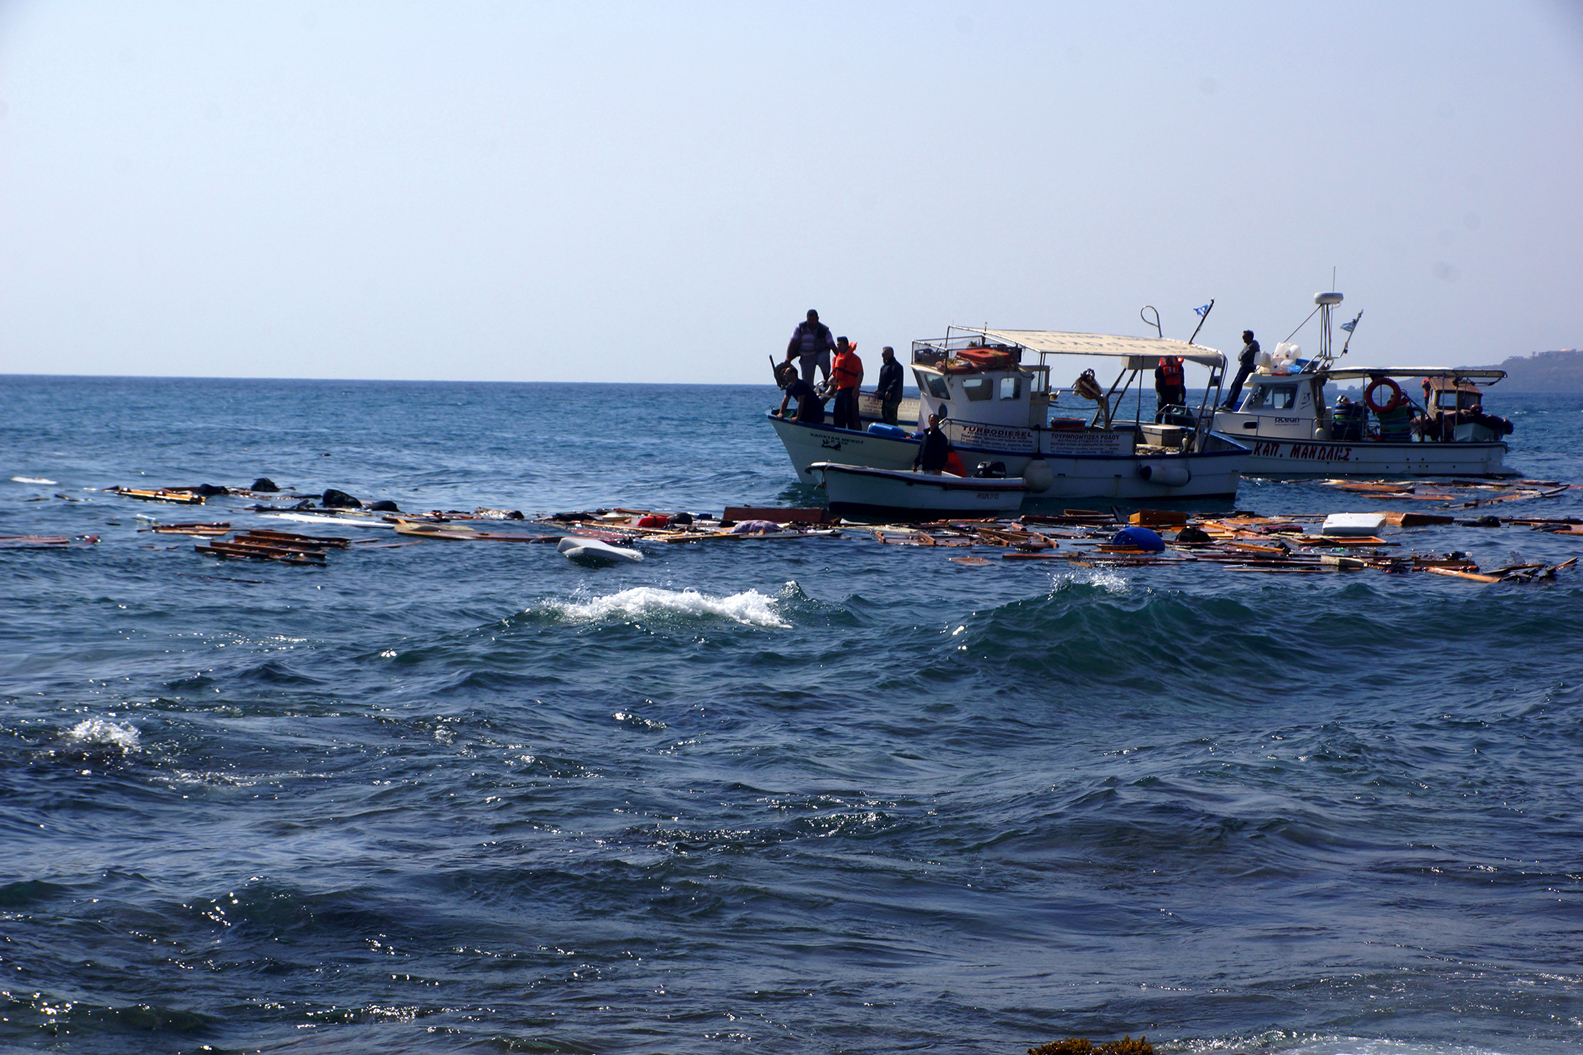 Νέα τραγωδία με επτά νεκρούς πρόσφυγες στα νερά του Αιγαίου – δύο παιδιά μεταξύ των θυμάτων